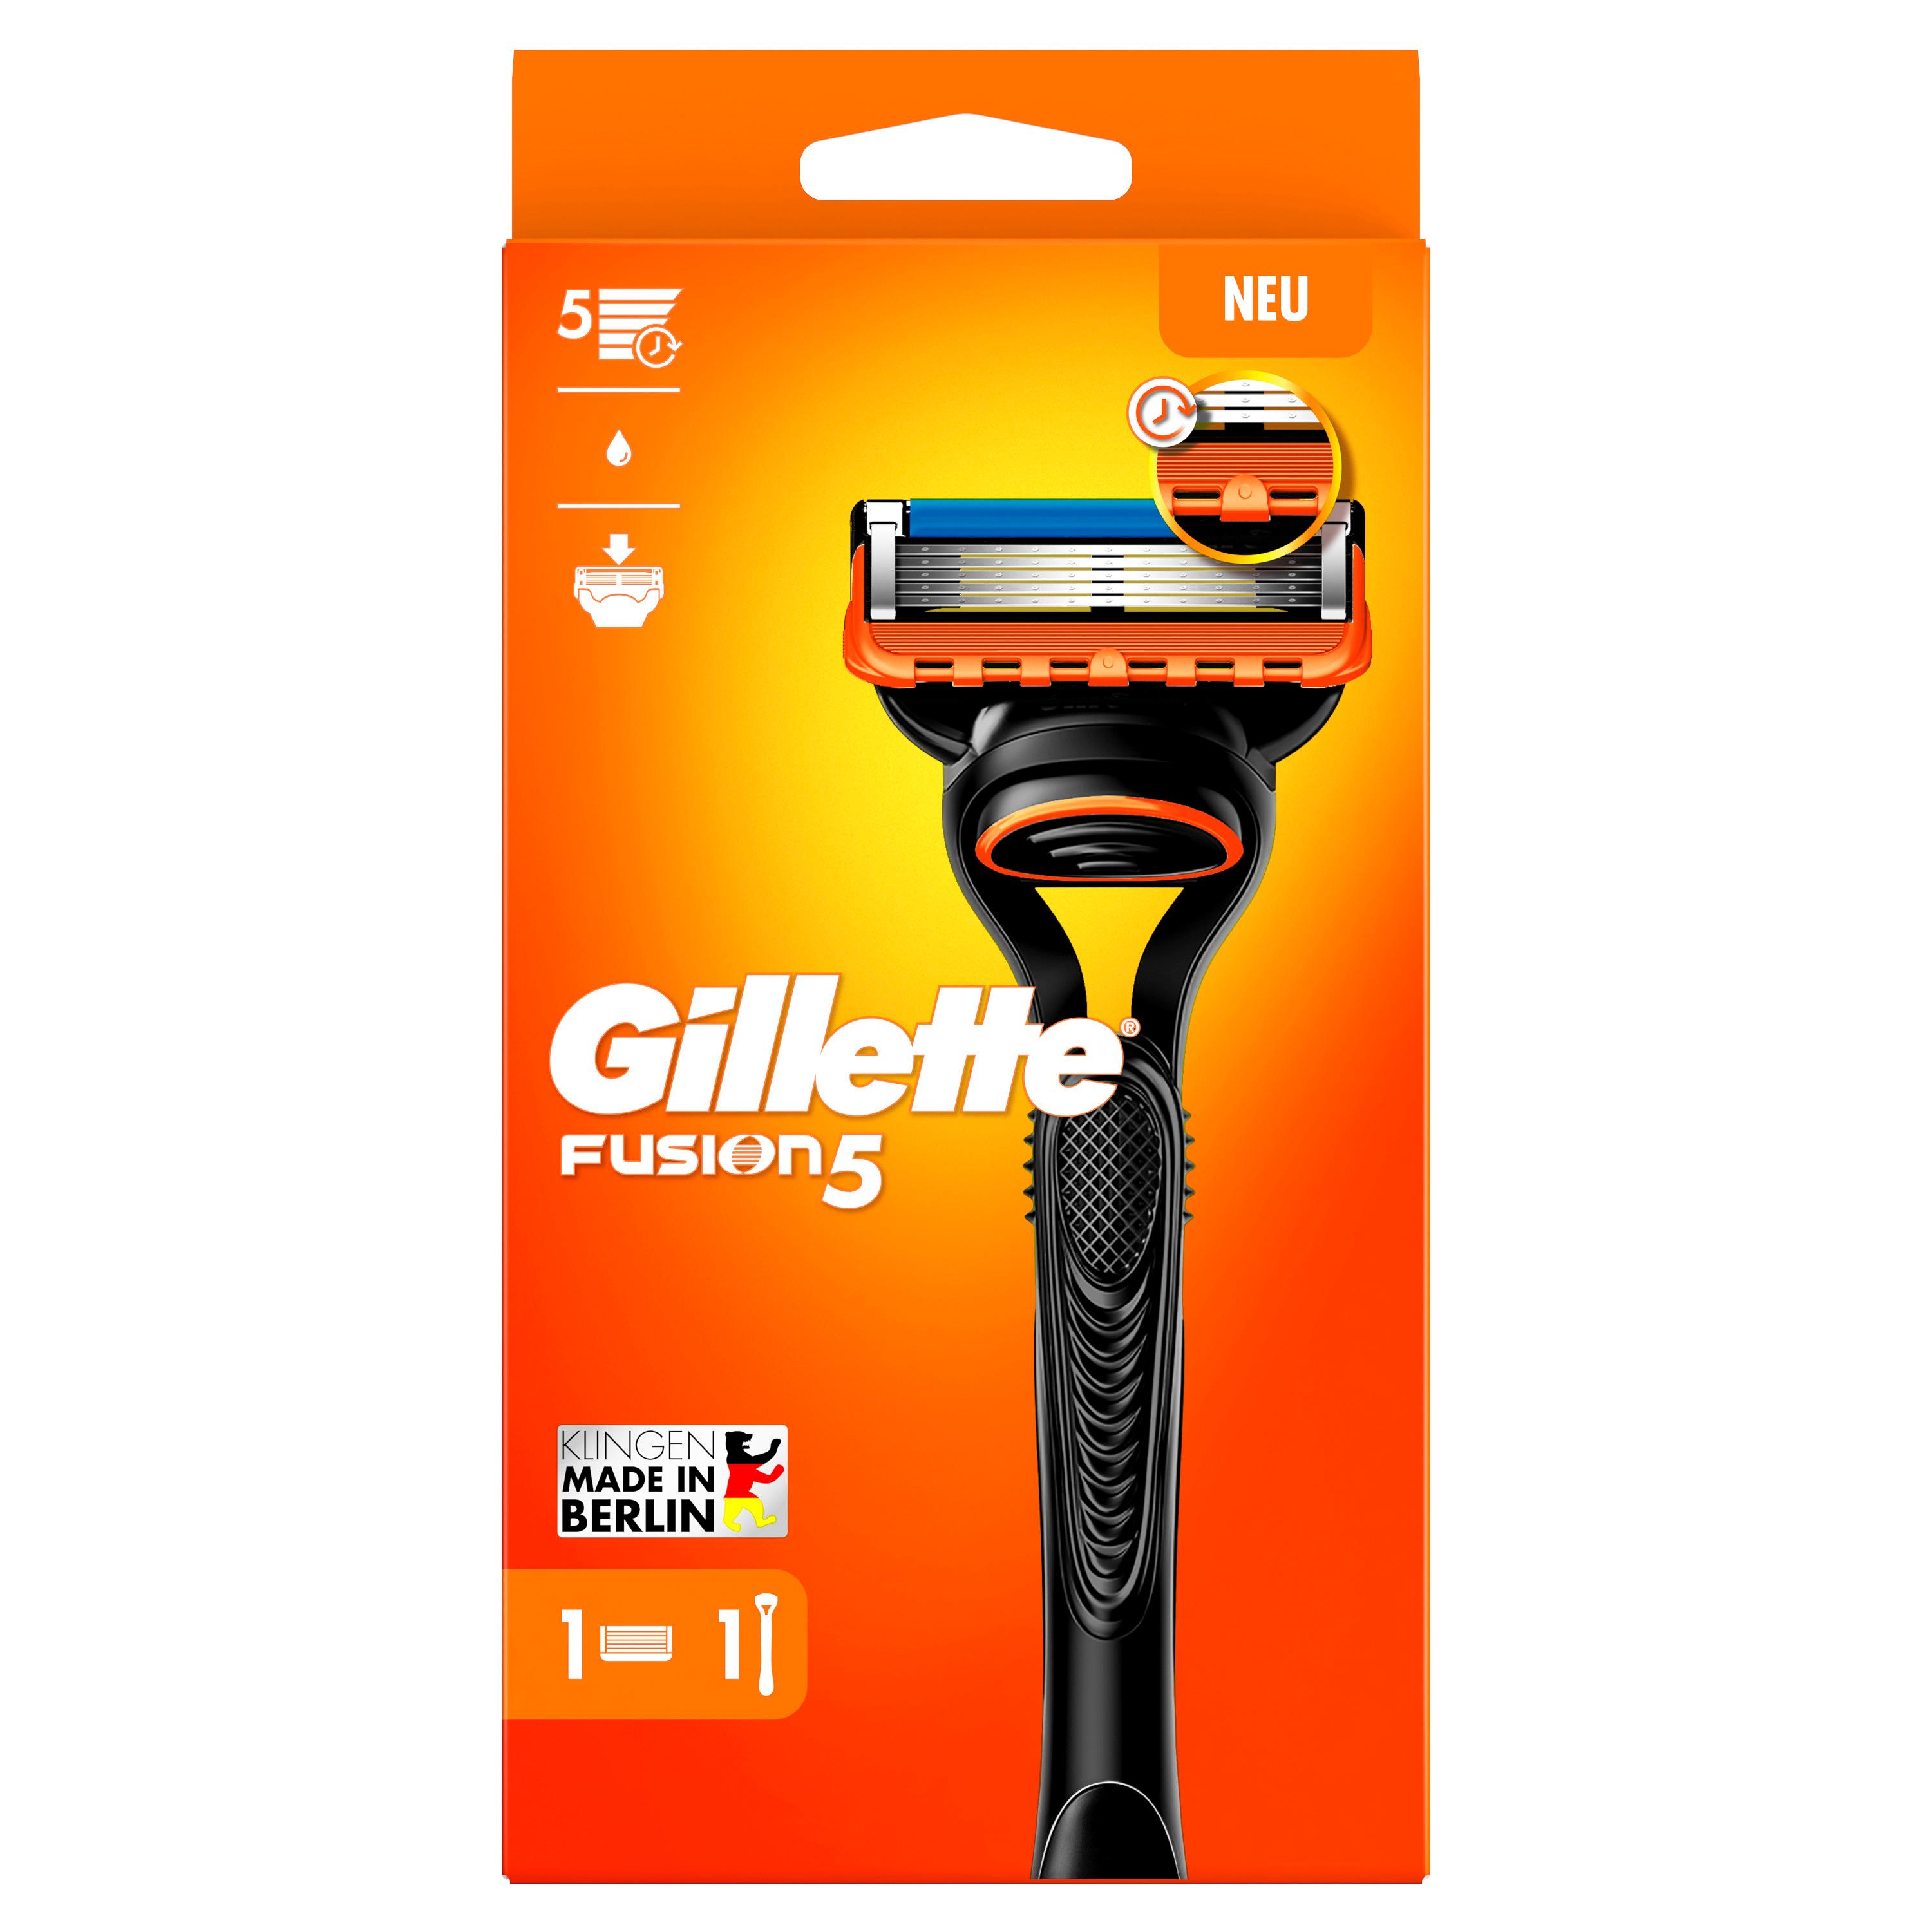 Gillette - Fusion5 Rasierapparat mit 1 Klinge